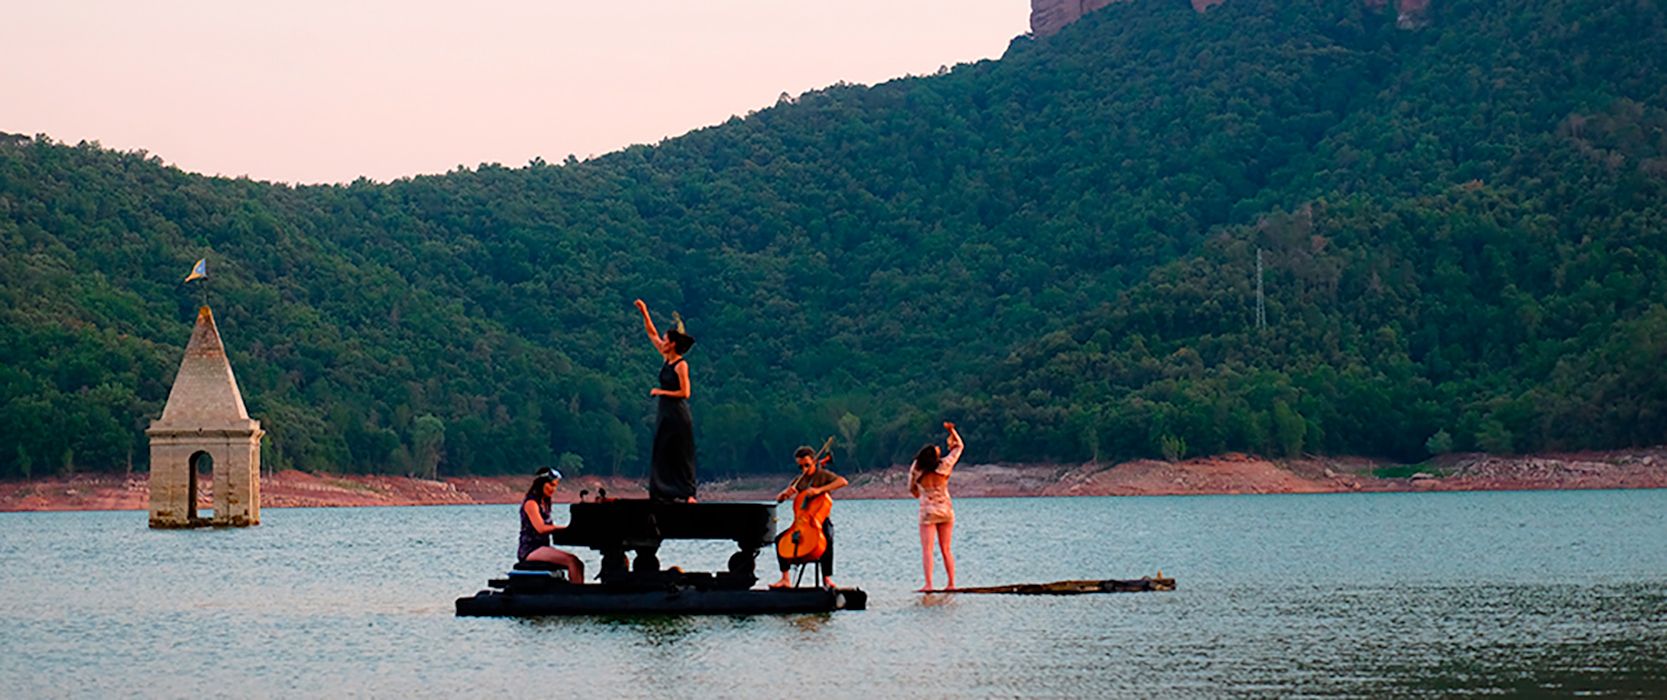 'El Piano del Lago', el espectáculo flotante que fusiona música, teatro y danza